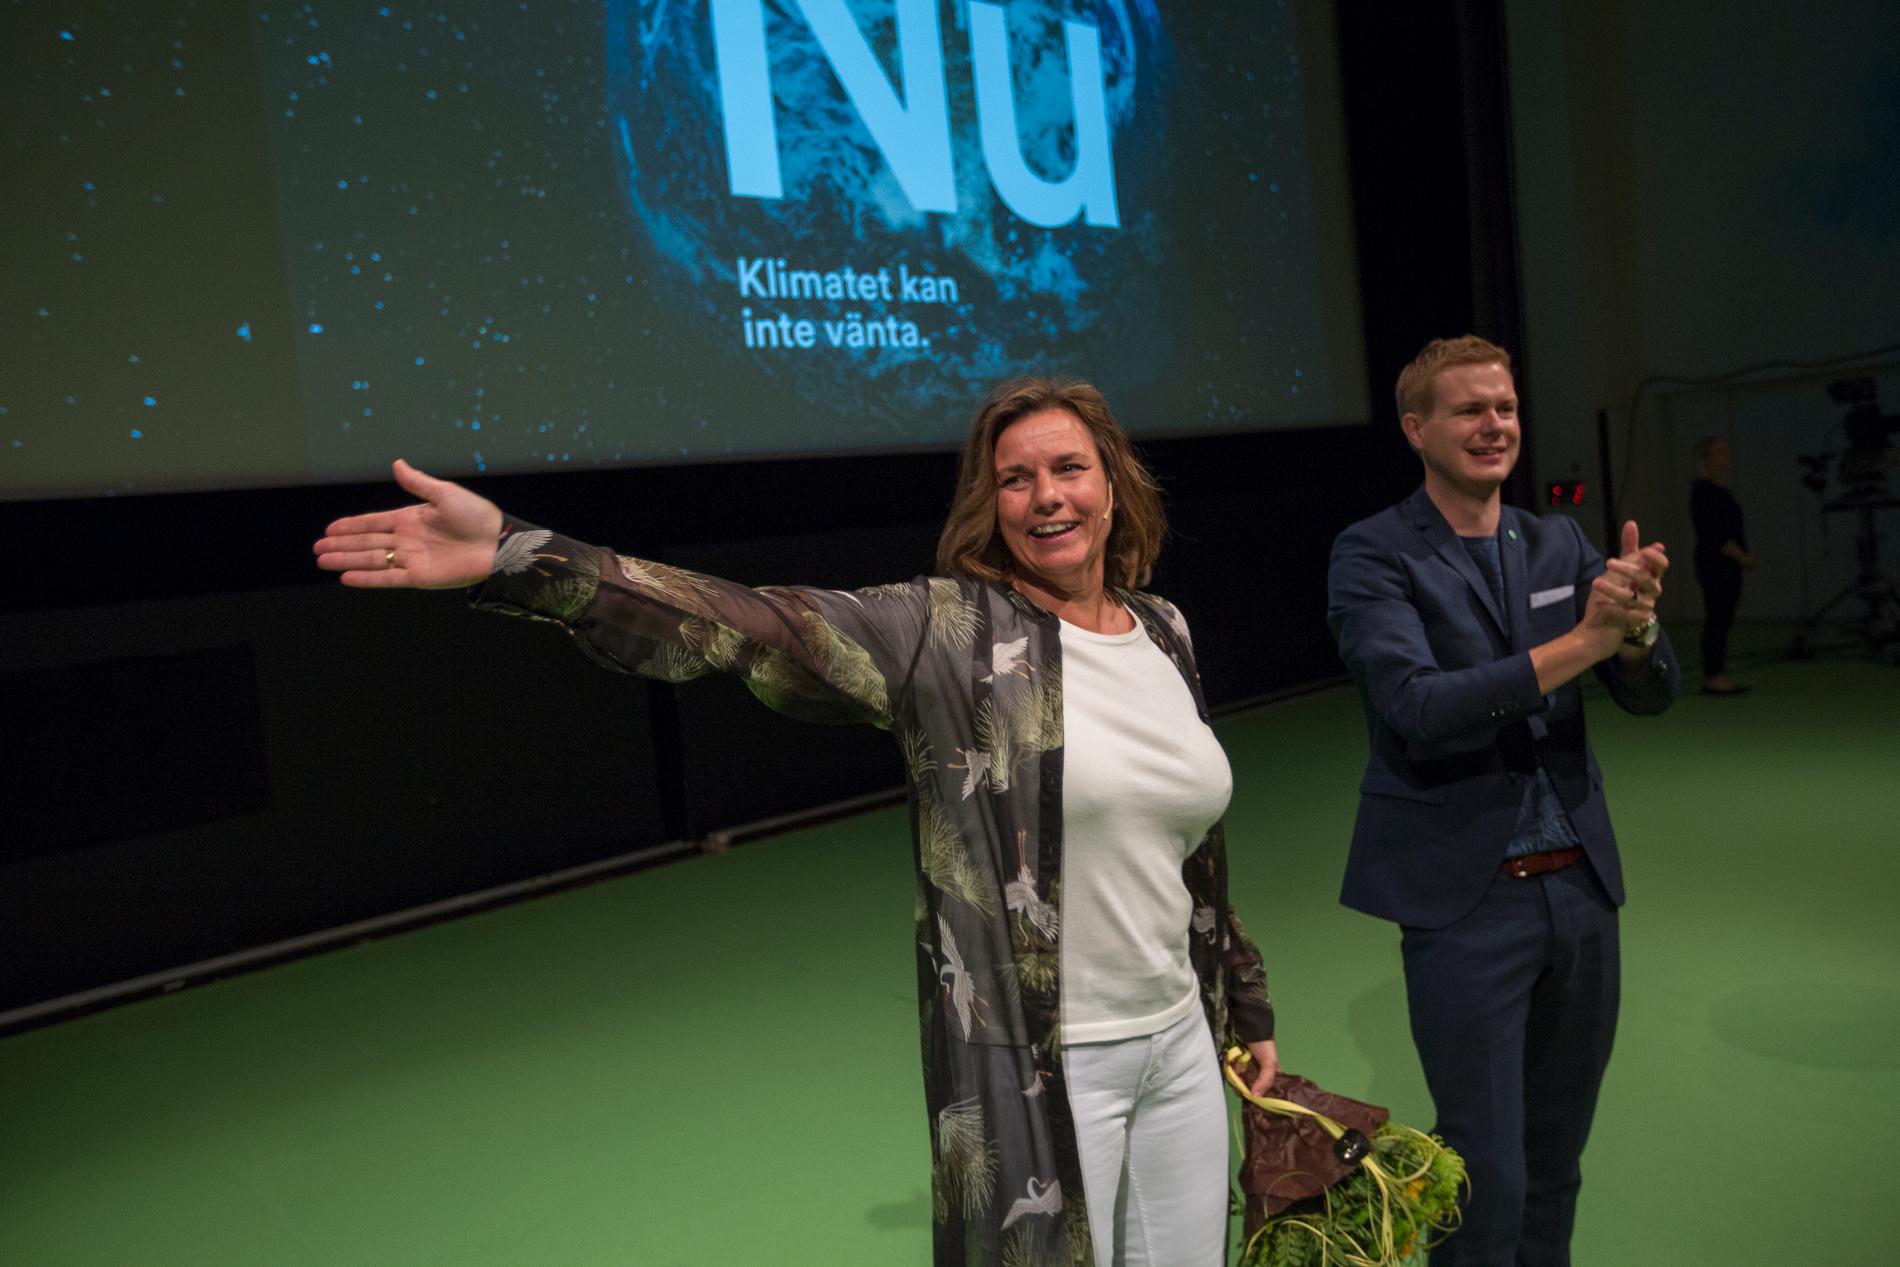 Miljöpartiets språkrör Isabella Lövin blir gratulerad av språkrörskollegan Gustav Fridolin i samband med sitt tal under partiets kongress i Västerås.